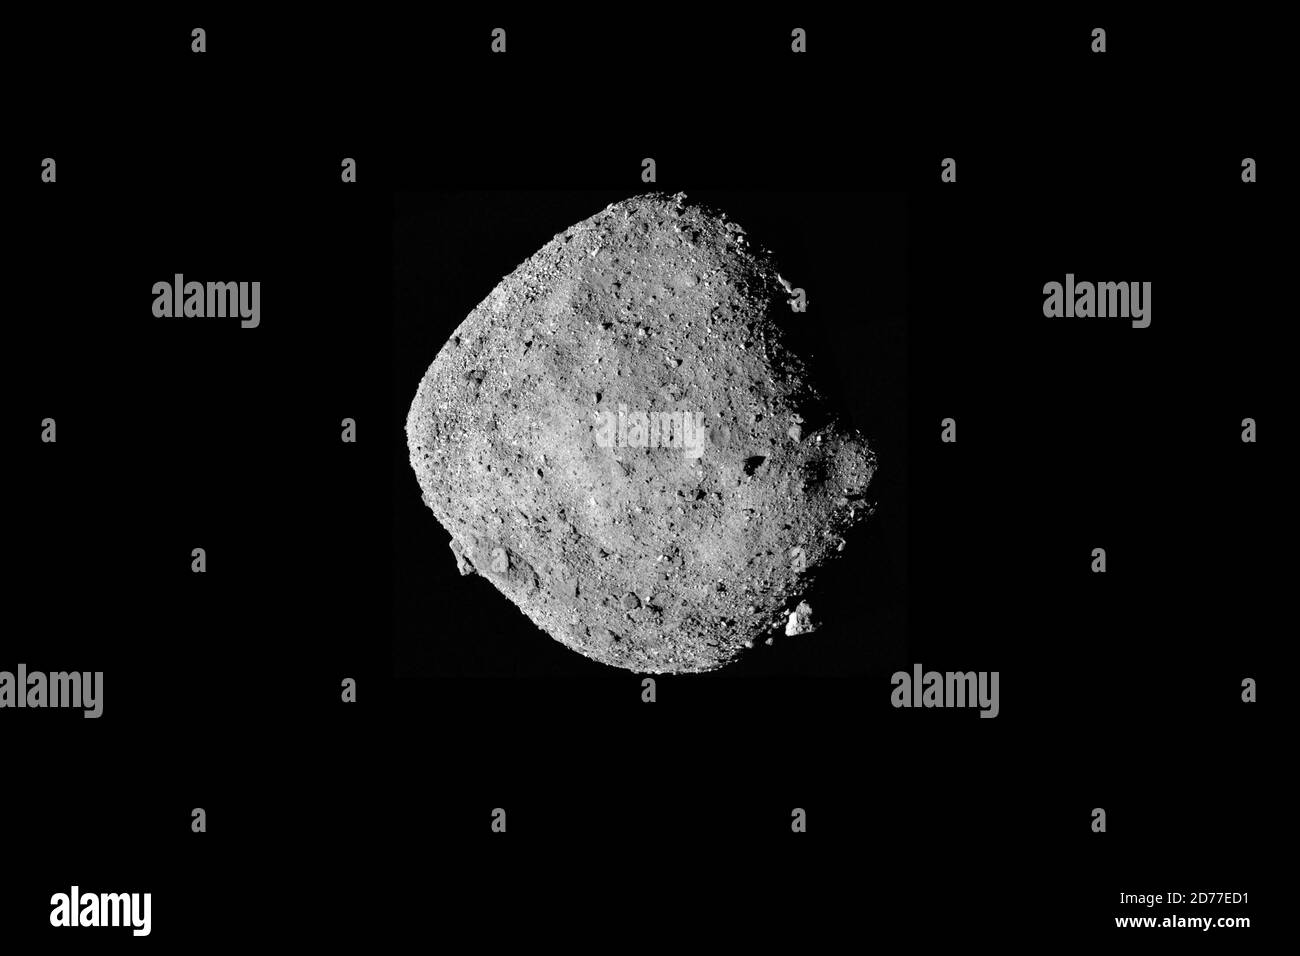 ASTEROID BENNU - 02. Dezember 2018 - EIN Mosaikbild des Asteroiden Bennu ist verfügbar, das aus 12 PolyCam-Bildern besteht, die am 2. Dezember vom OSIRIS-Rex gesammelt wurden Stockfoto